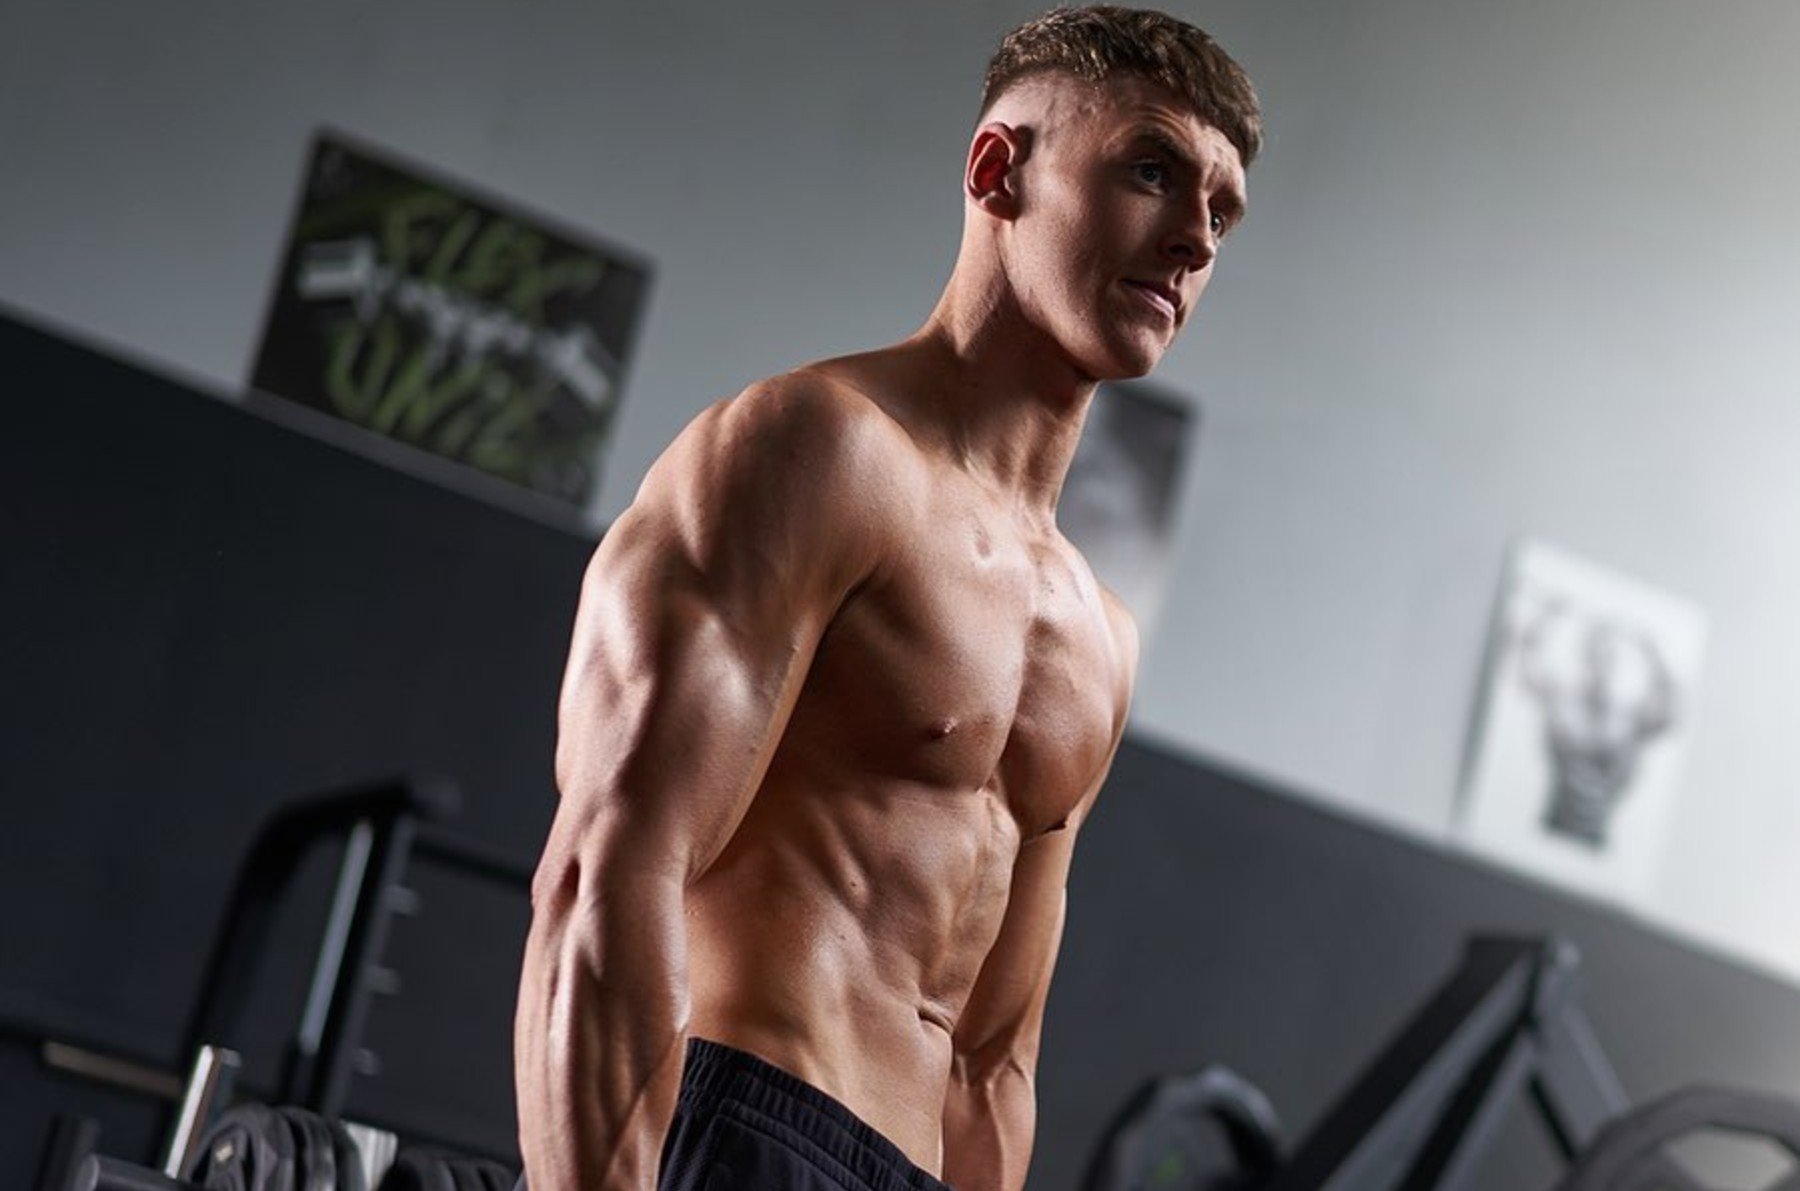 Trainiere die Brust wie ein Wettkampf-Bodybuilder | Brust & Trizeps Workout